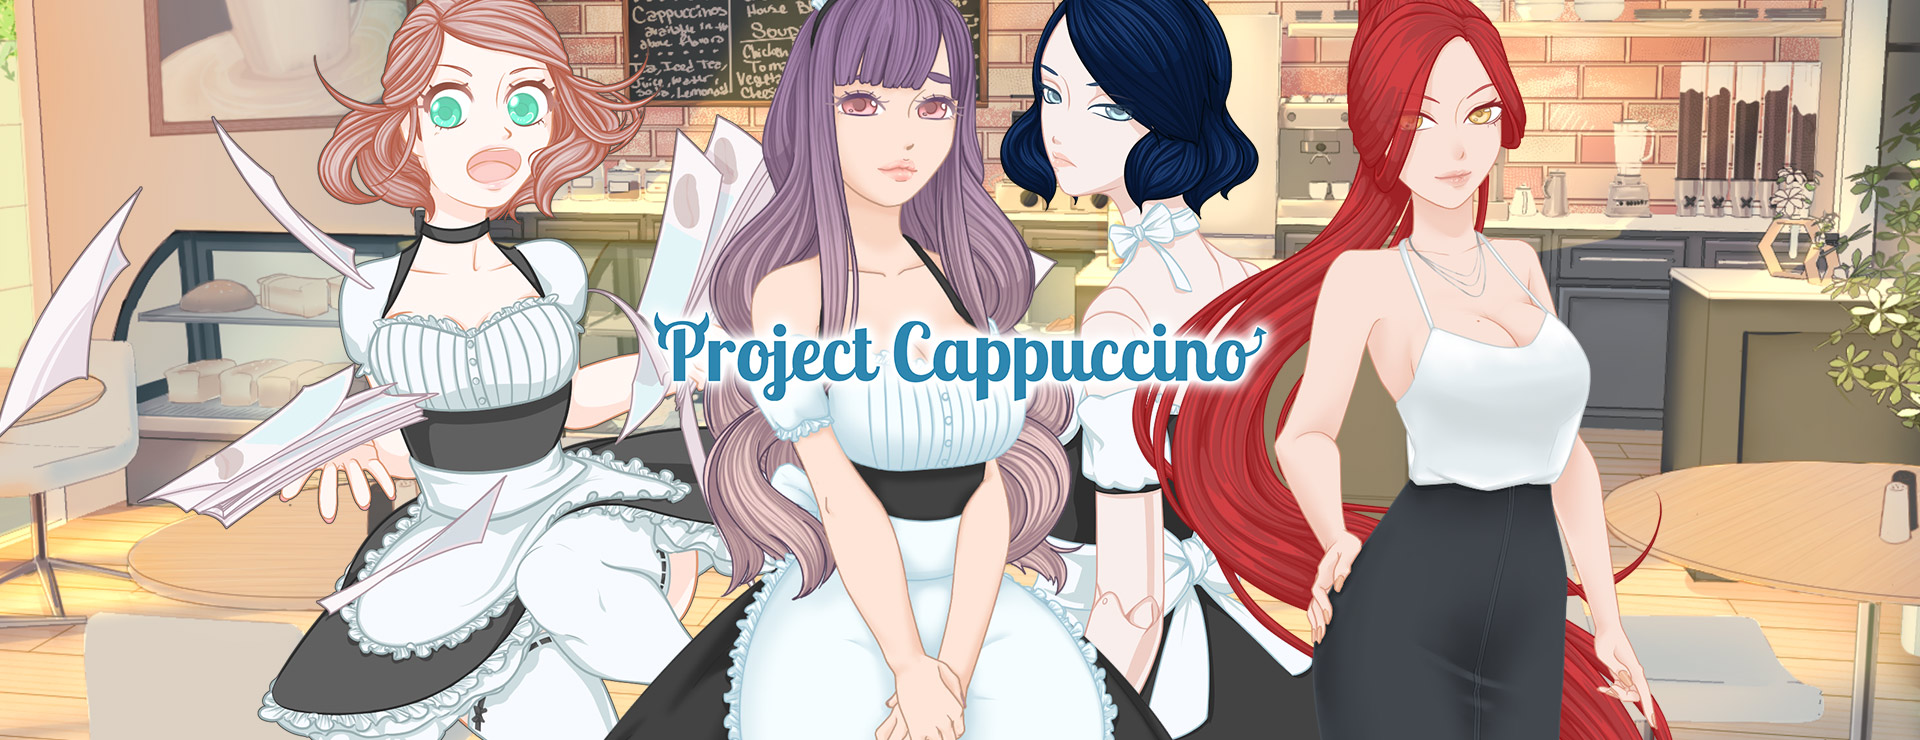 Project Cappuccino - Japanisches Adventure Spiel